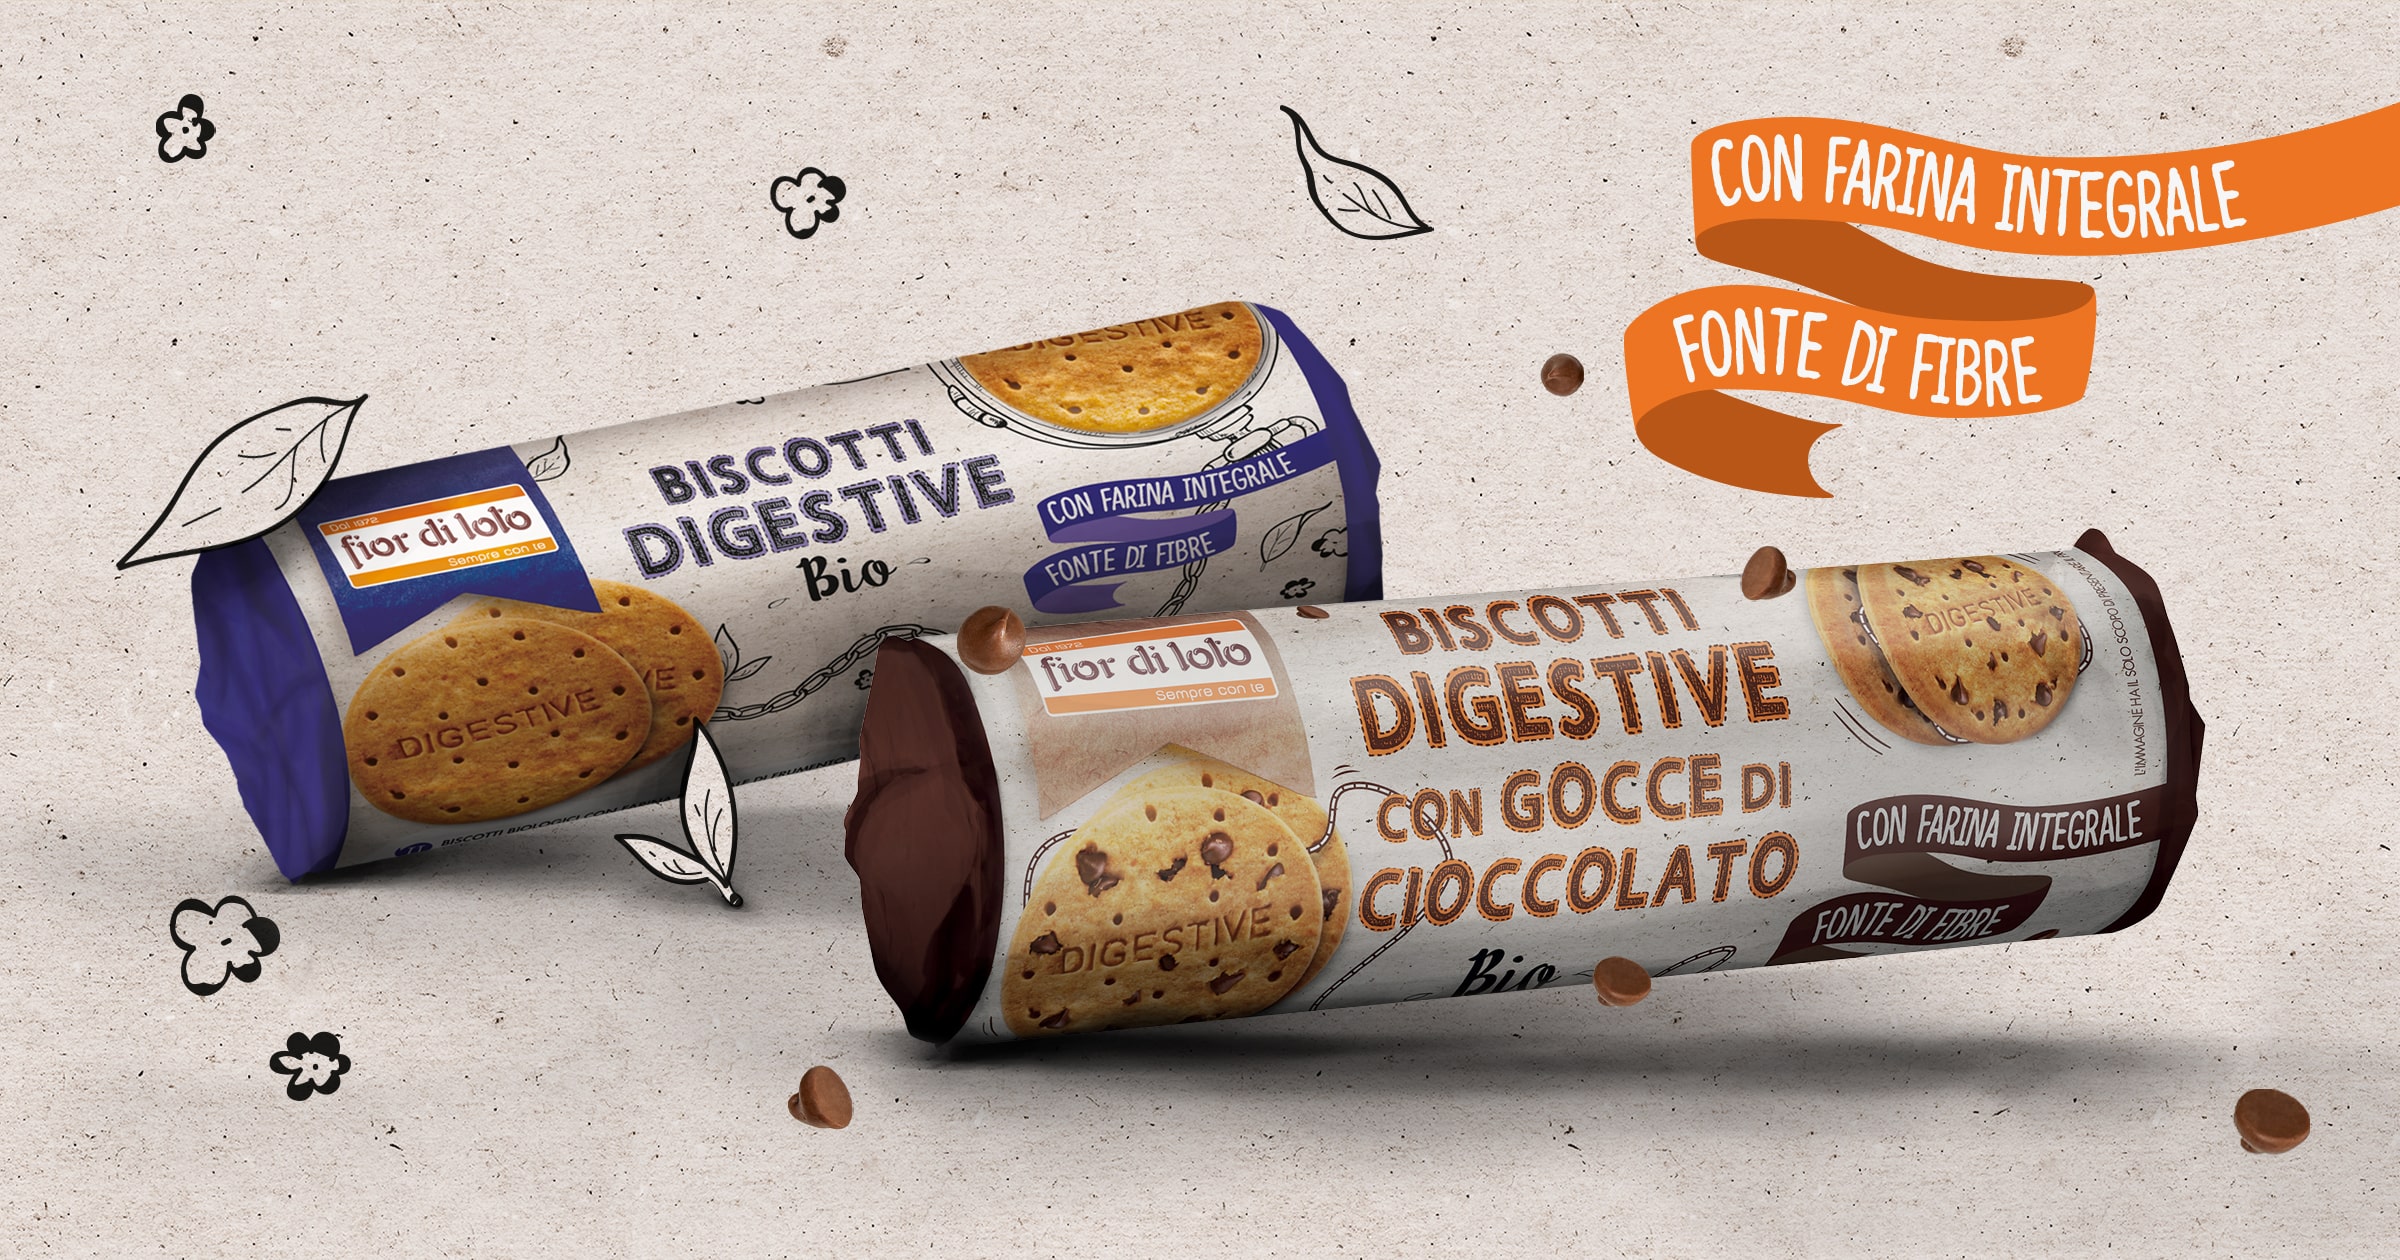 Digestive: il biscotto bio con farina integrale che parla inglese